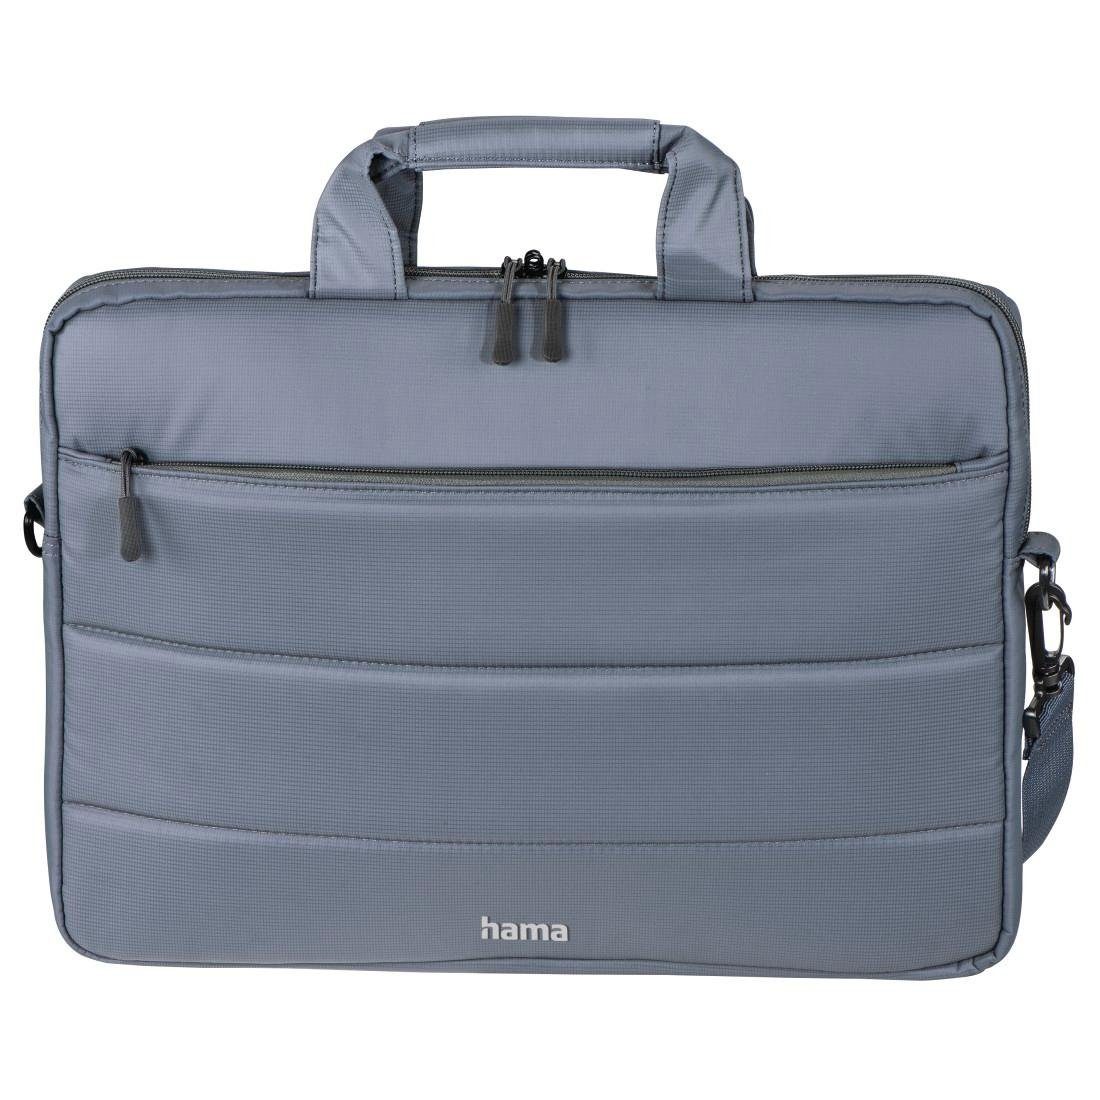 Hama Laptoptasche Notebook Tasche bis 44 cm (17,3 Zoll) aus Nylon, eleganter Look, Mit Tablet- und Dokumentenfach, Organizerstruktur und Trolleyband